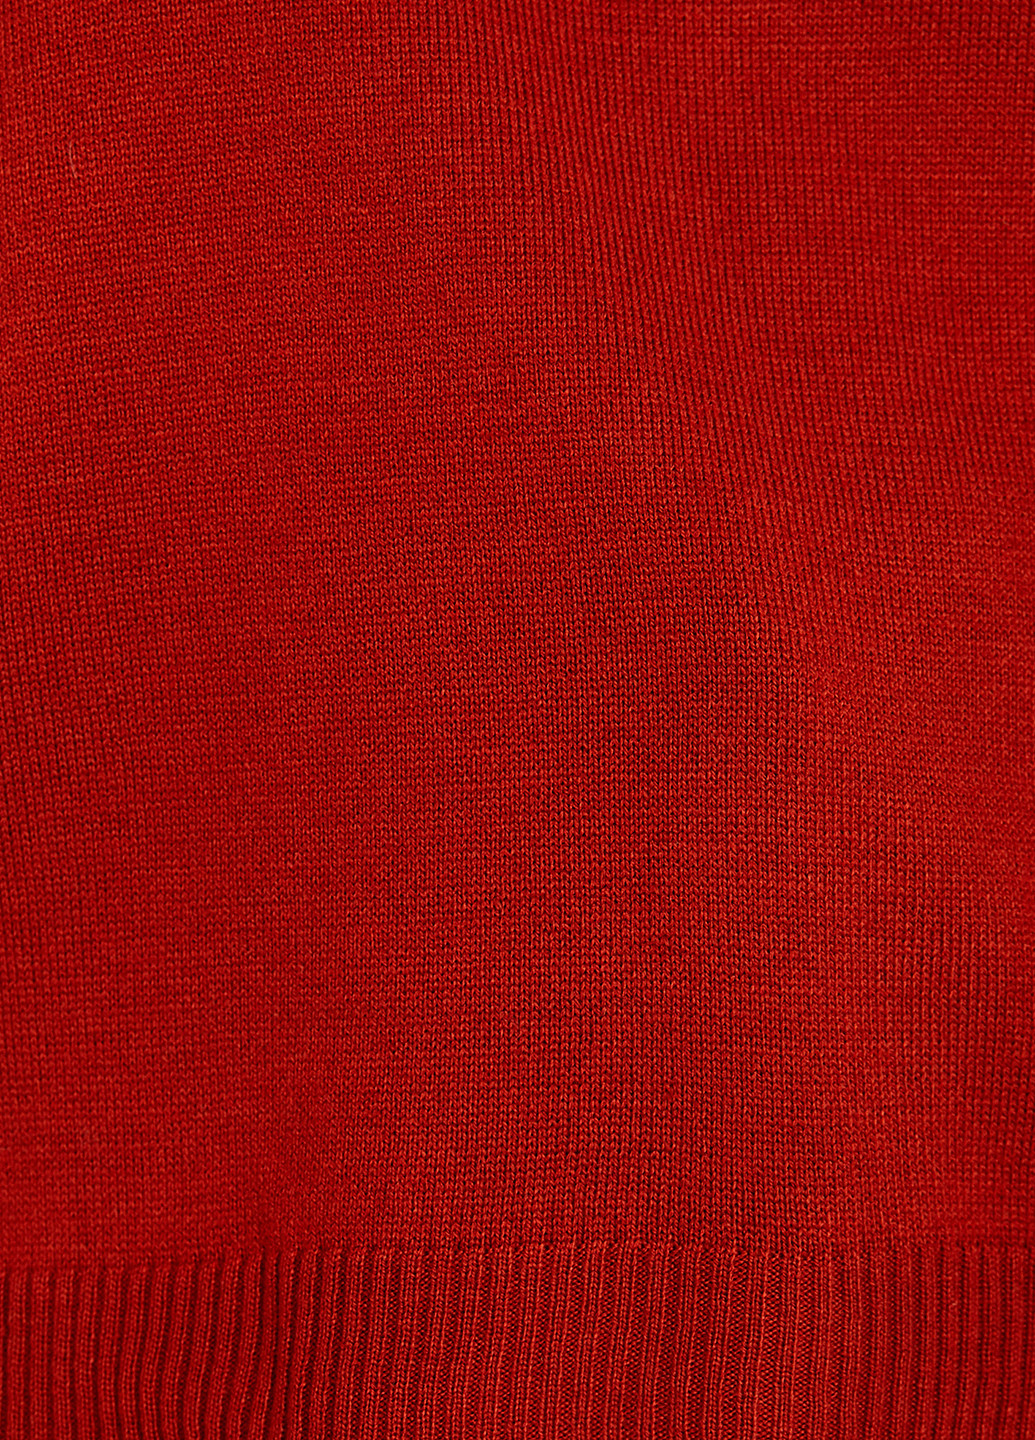 Темно-красный демисезонный пуловер пуловер KOTON